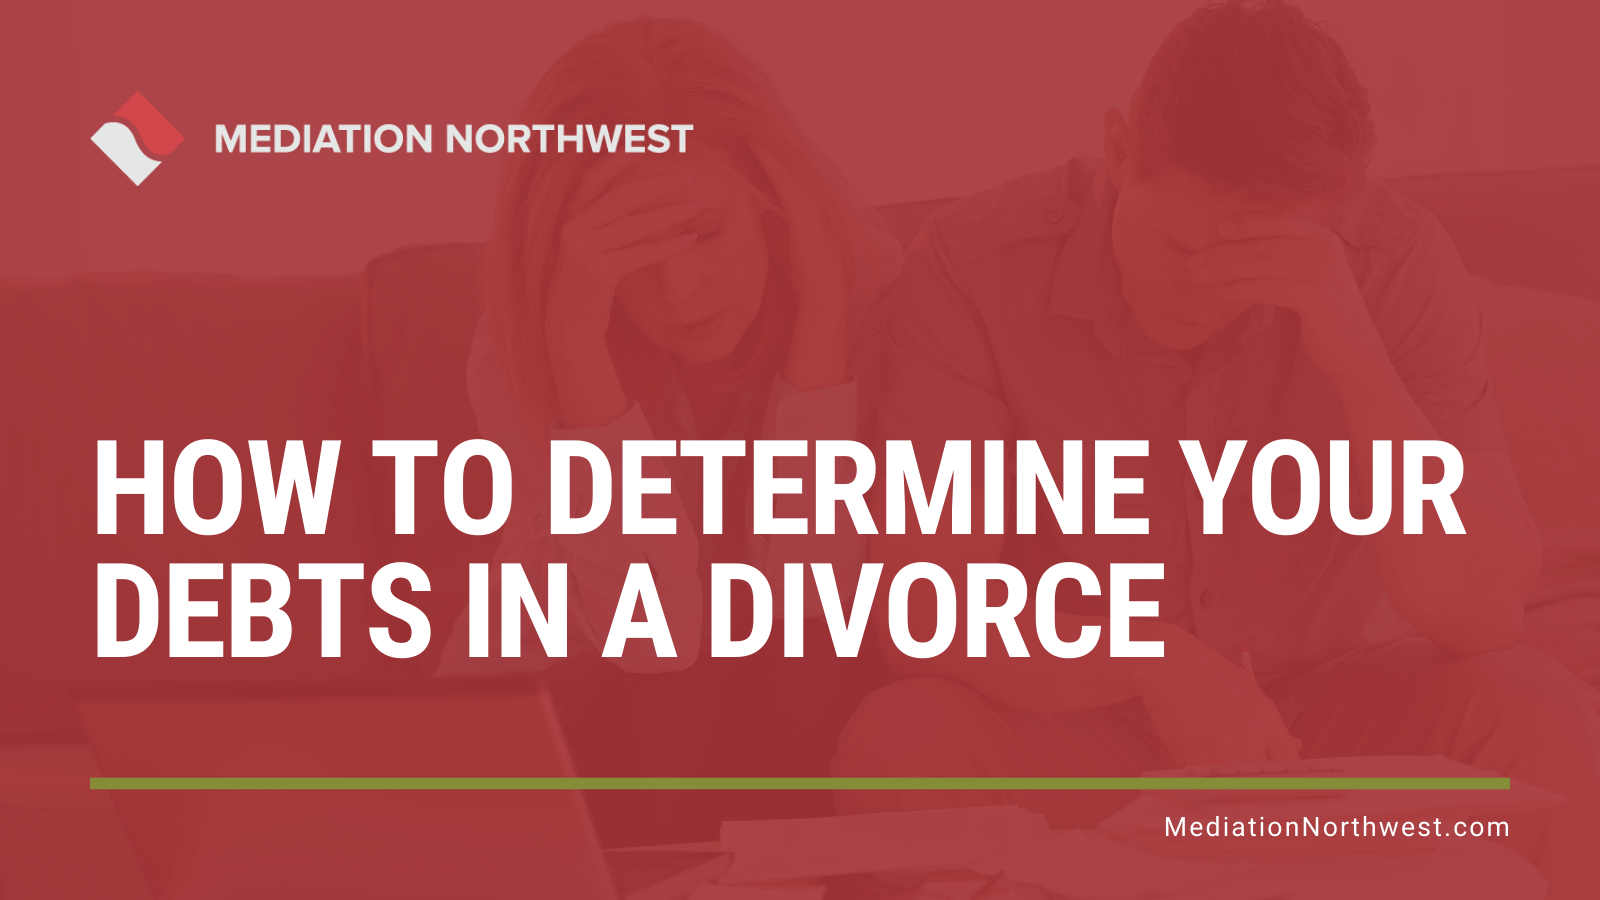 How to determine your debts in a divorce - Julie Gentili - eugene oregon divorce mediation